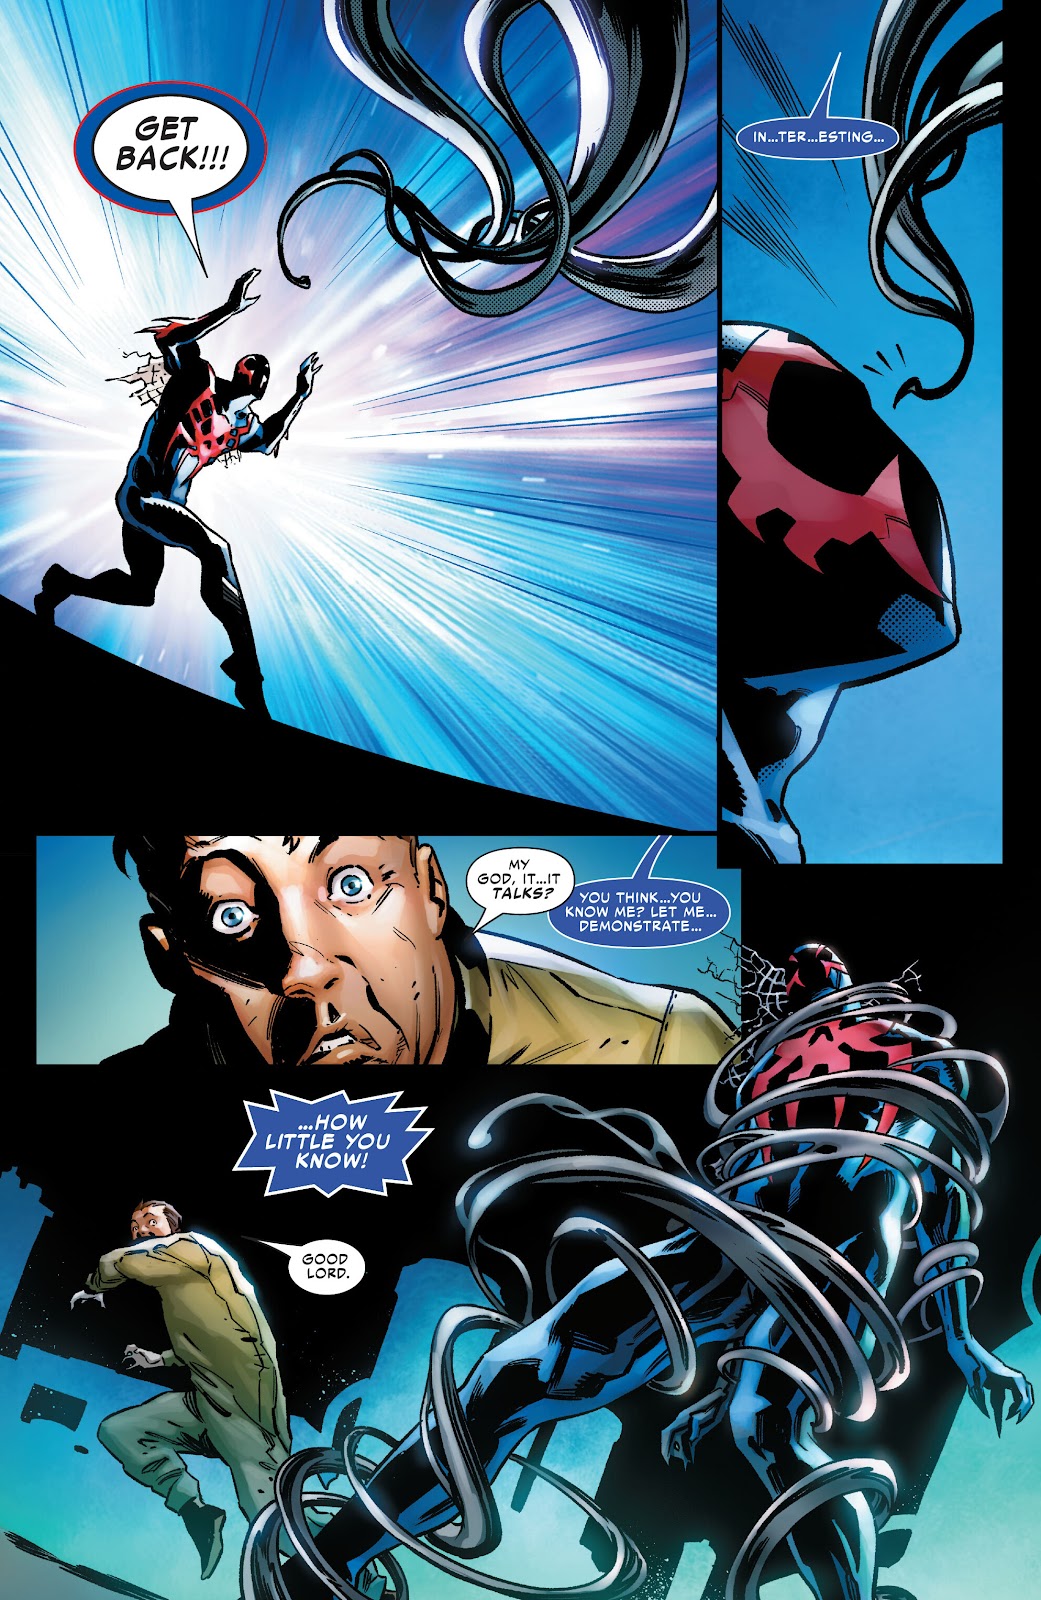 Symbiote Spider-Man 2099 issue 1 - Page 21